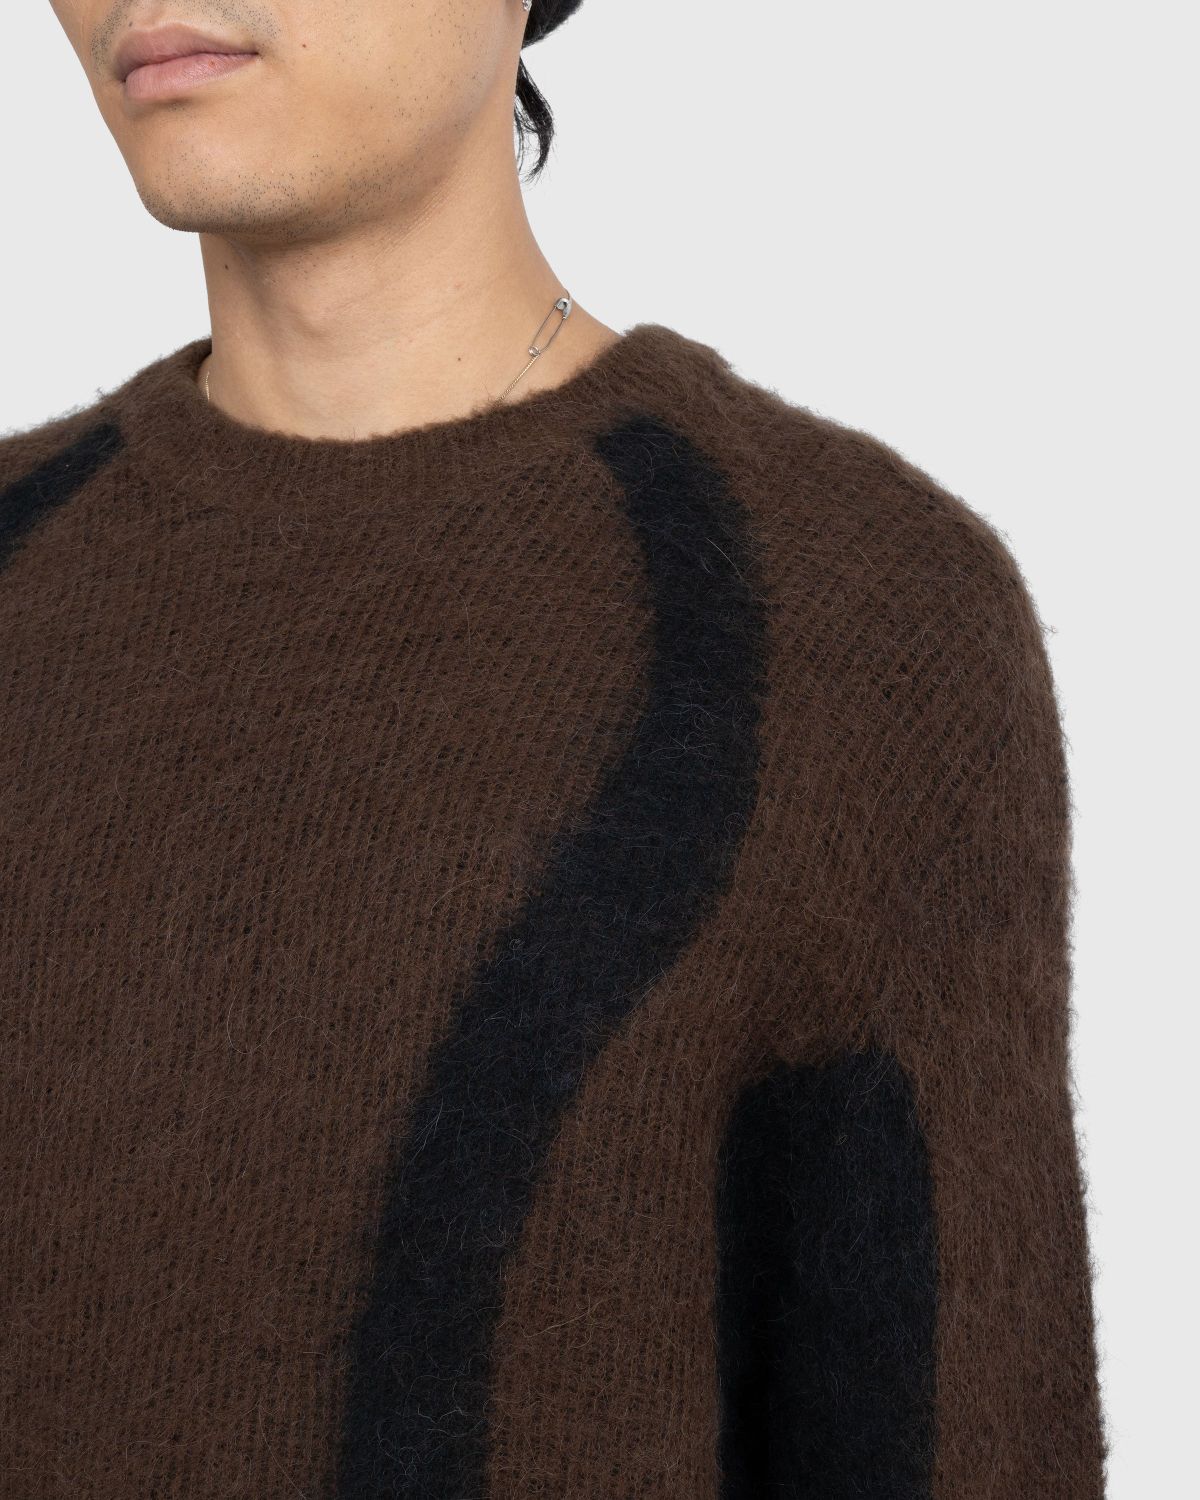 _J.L-A.L_ – Liquid Alpaca Sweater Black - Knitwear - Black - Image 7